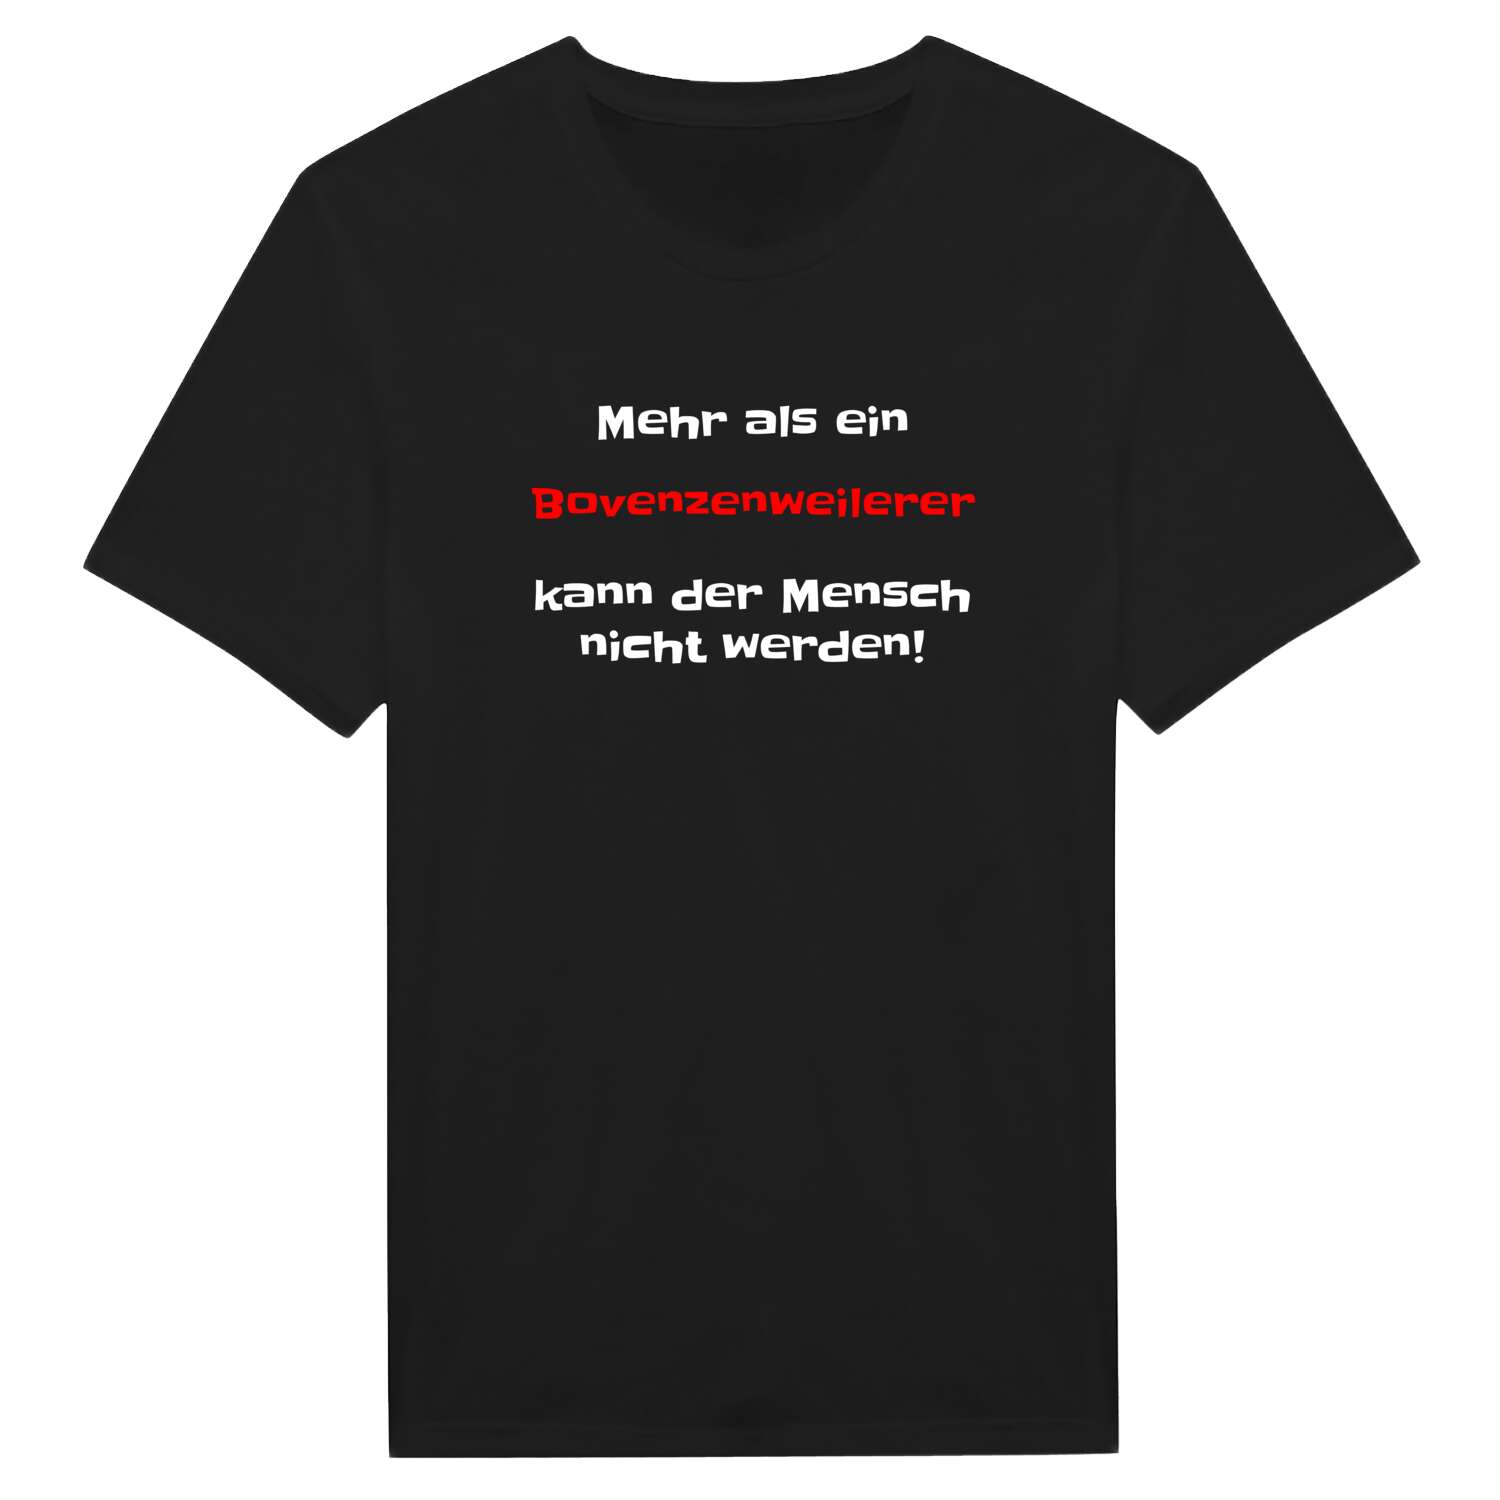 Bovenzenweiler T-Shirt »Mehr als ein«